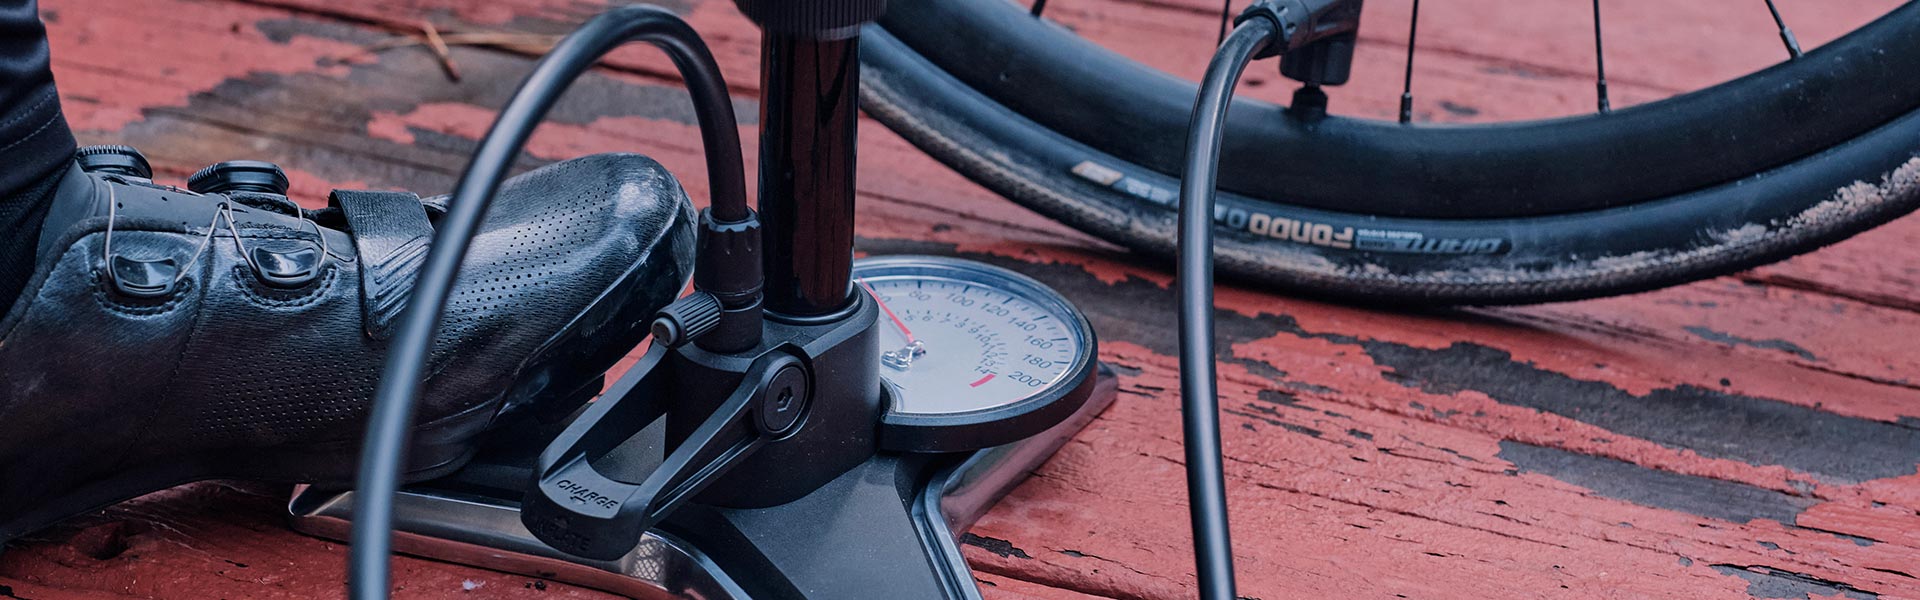 Pompe et kit de réparation roue pour vélo de ville